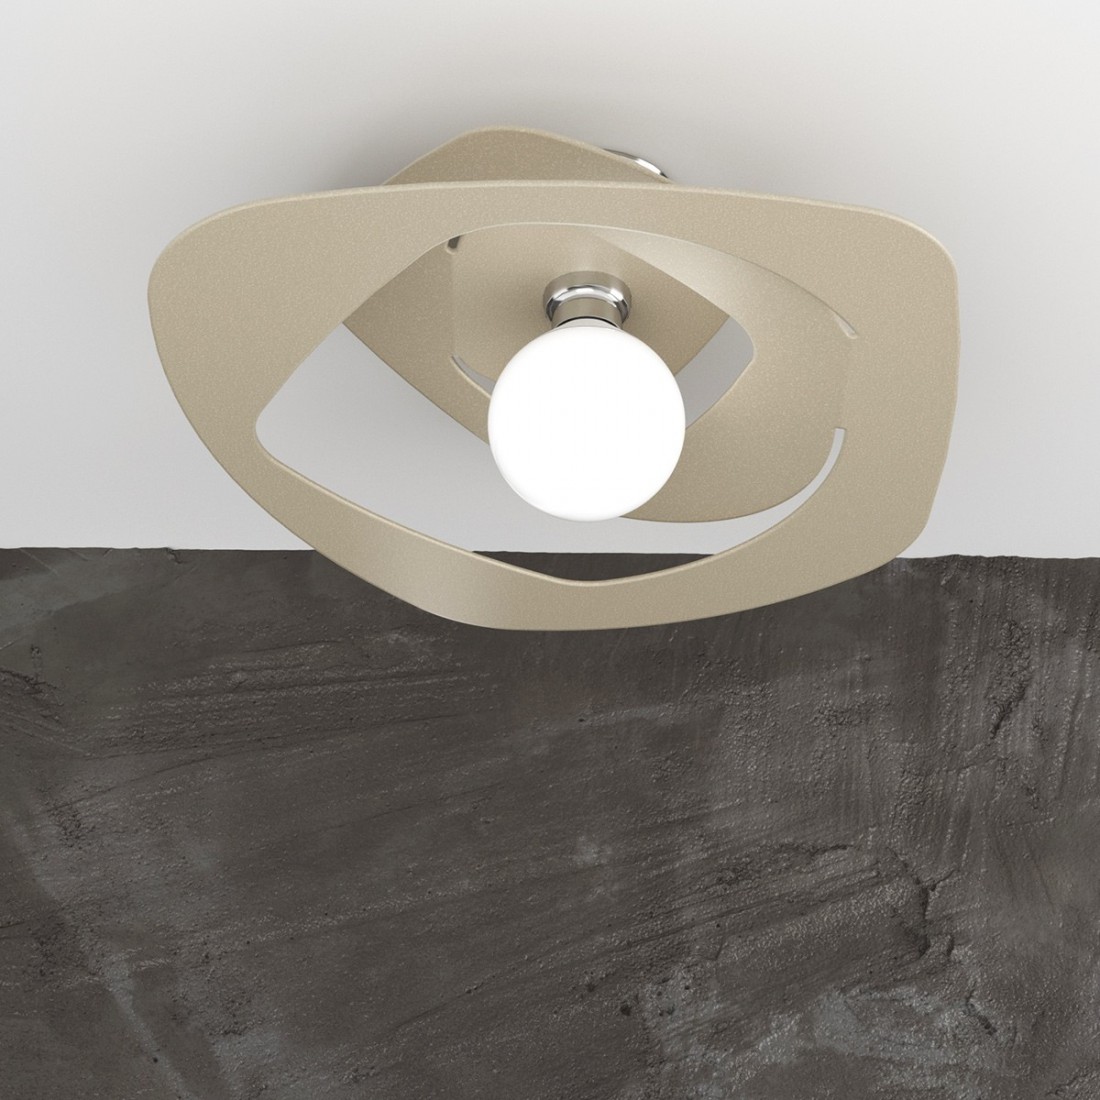 Plafoniera TP-WARPED 1157 PL50 E27 LED metallo bianco grigio sabbia lampada soffitto ultramoderna irregolare interno